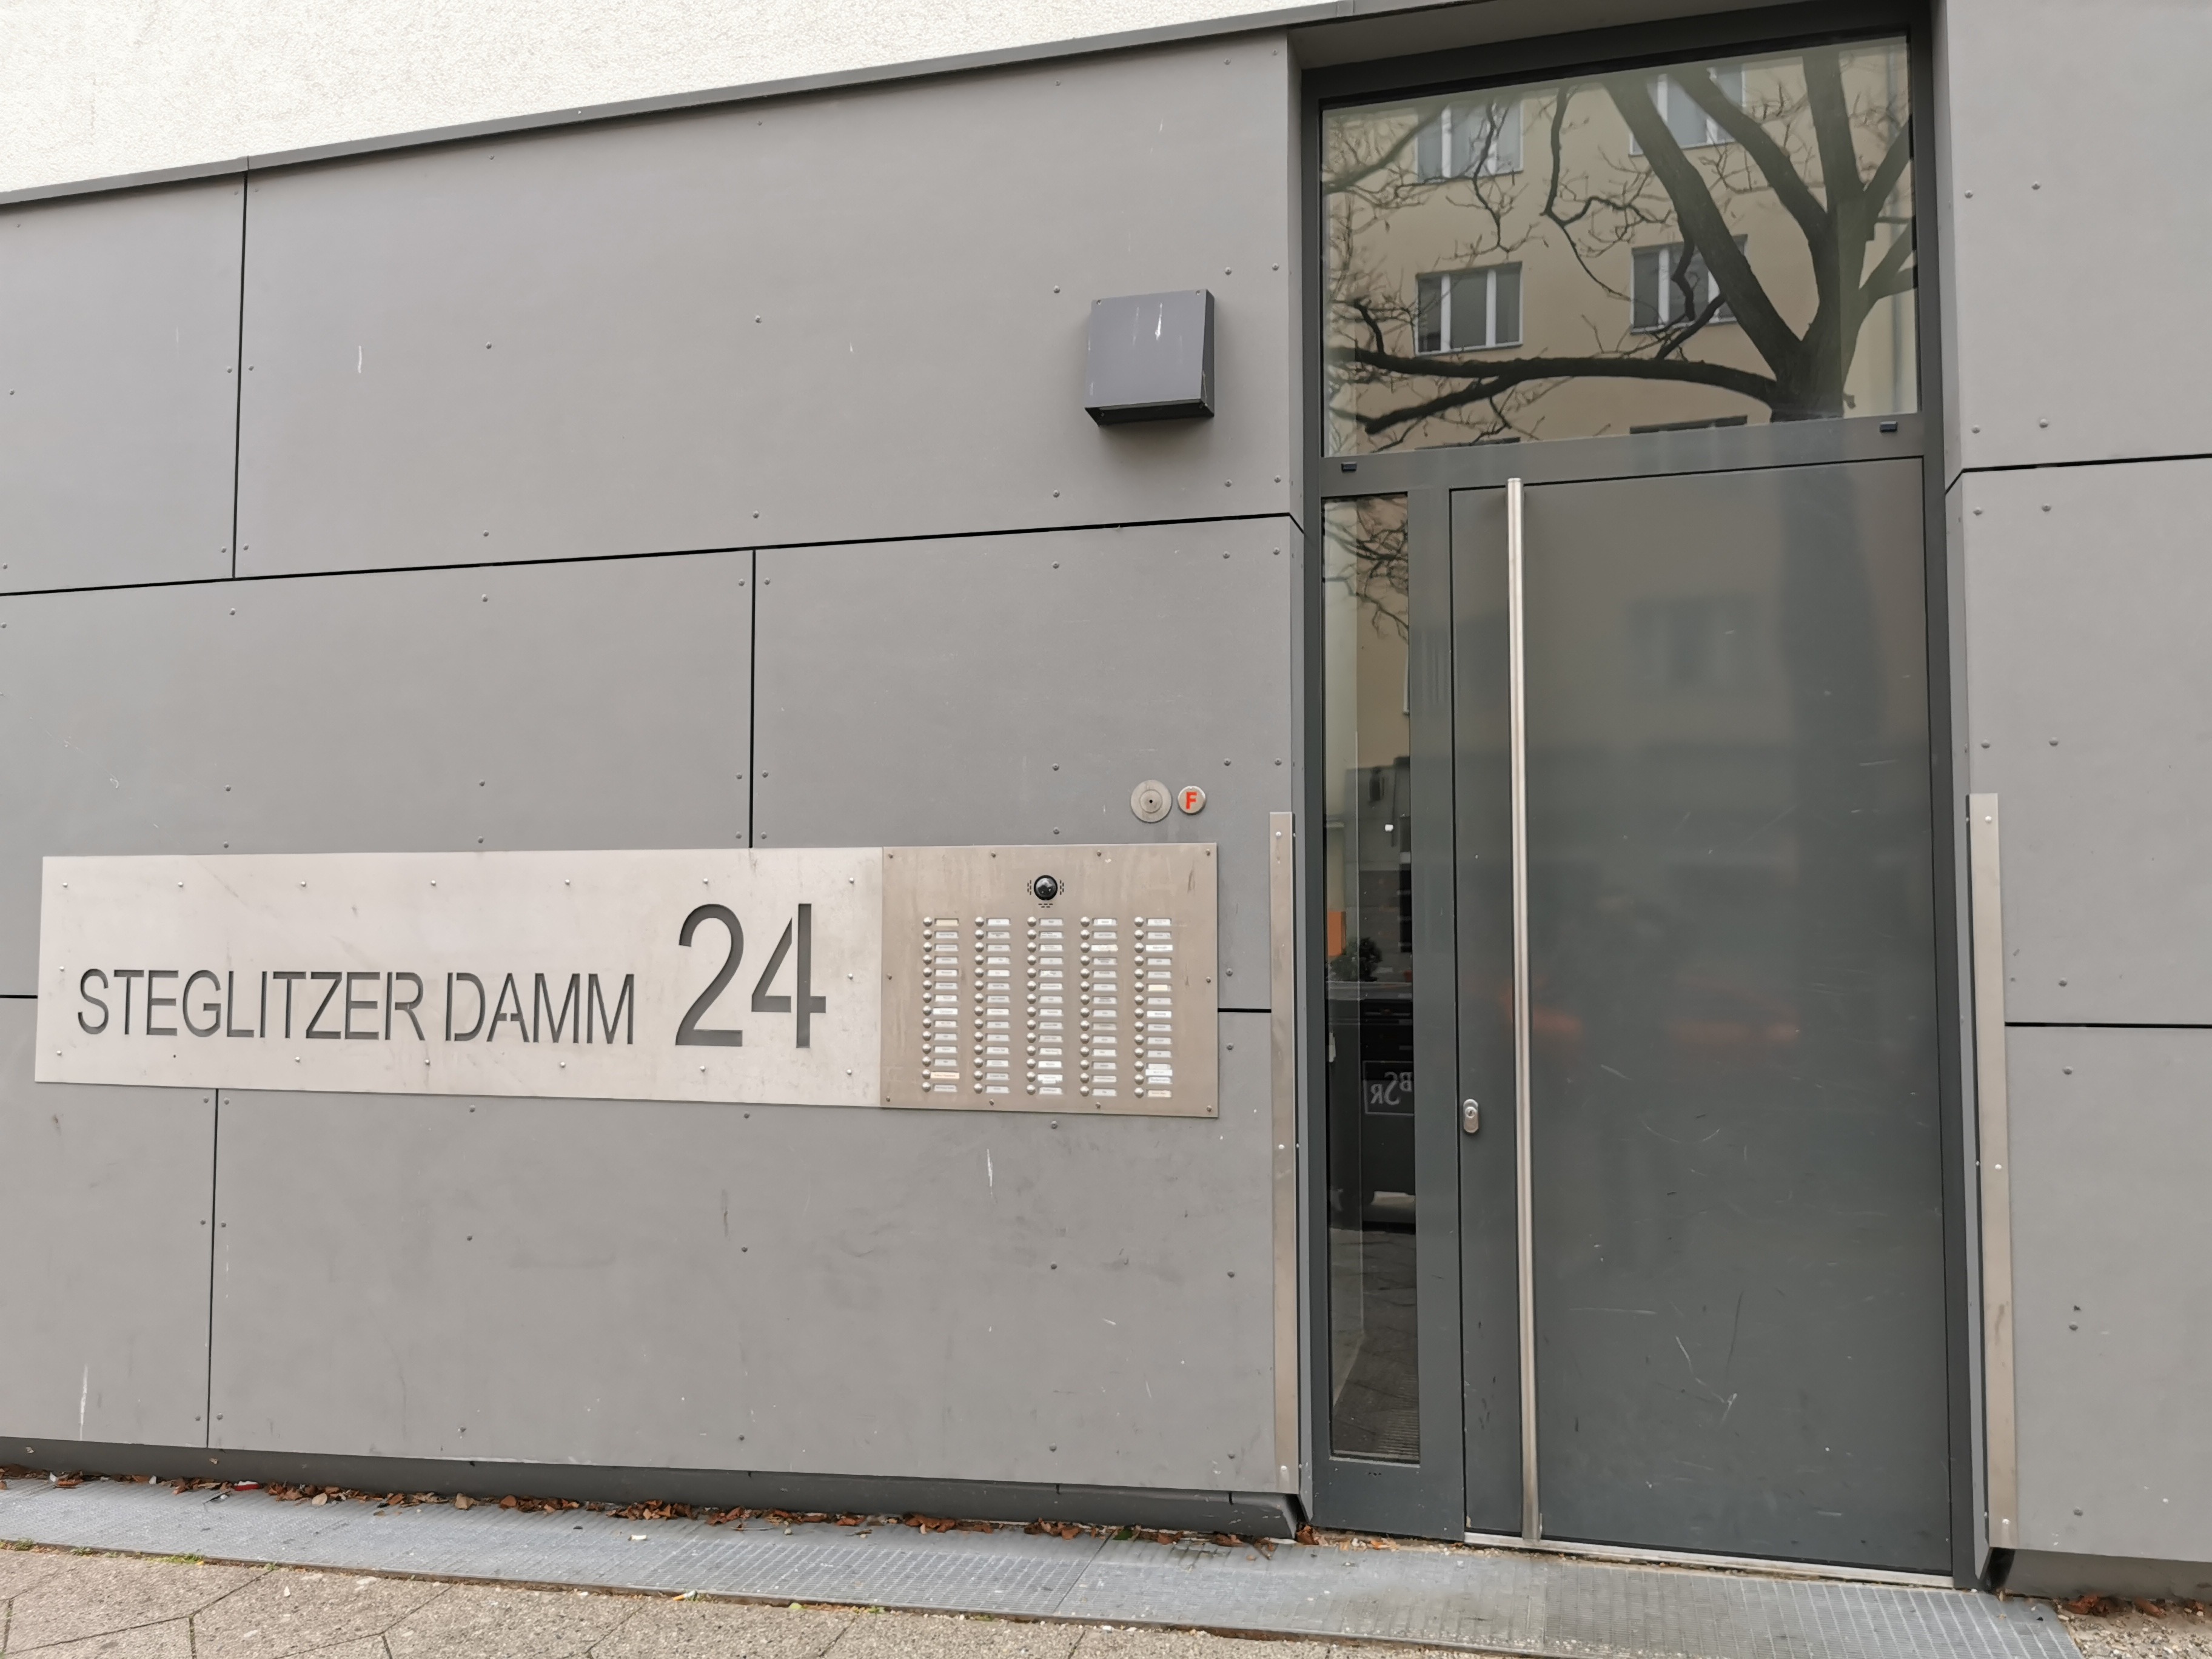 Woning / appartement - Berlin - Steglitzer Damm 24